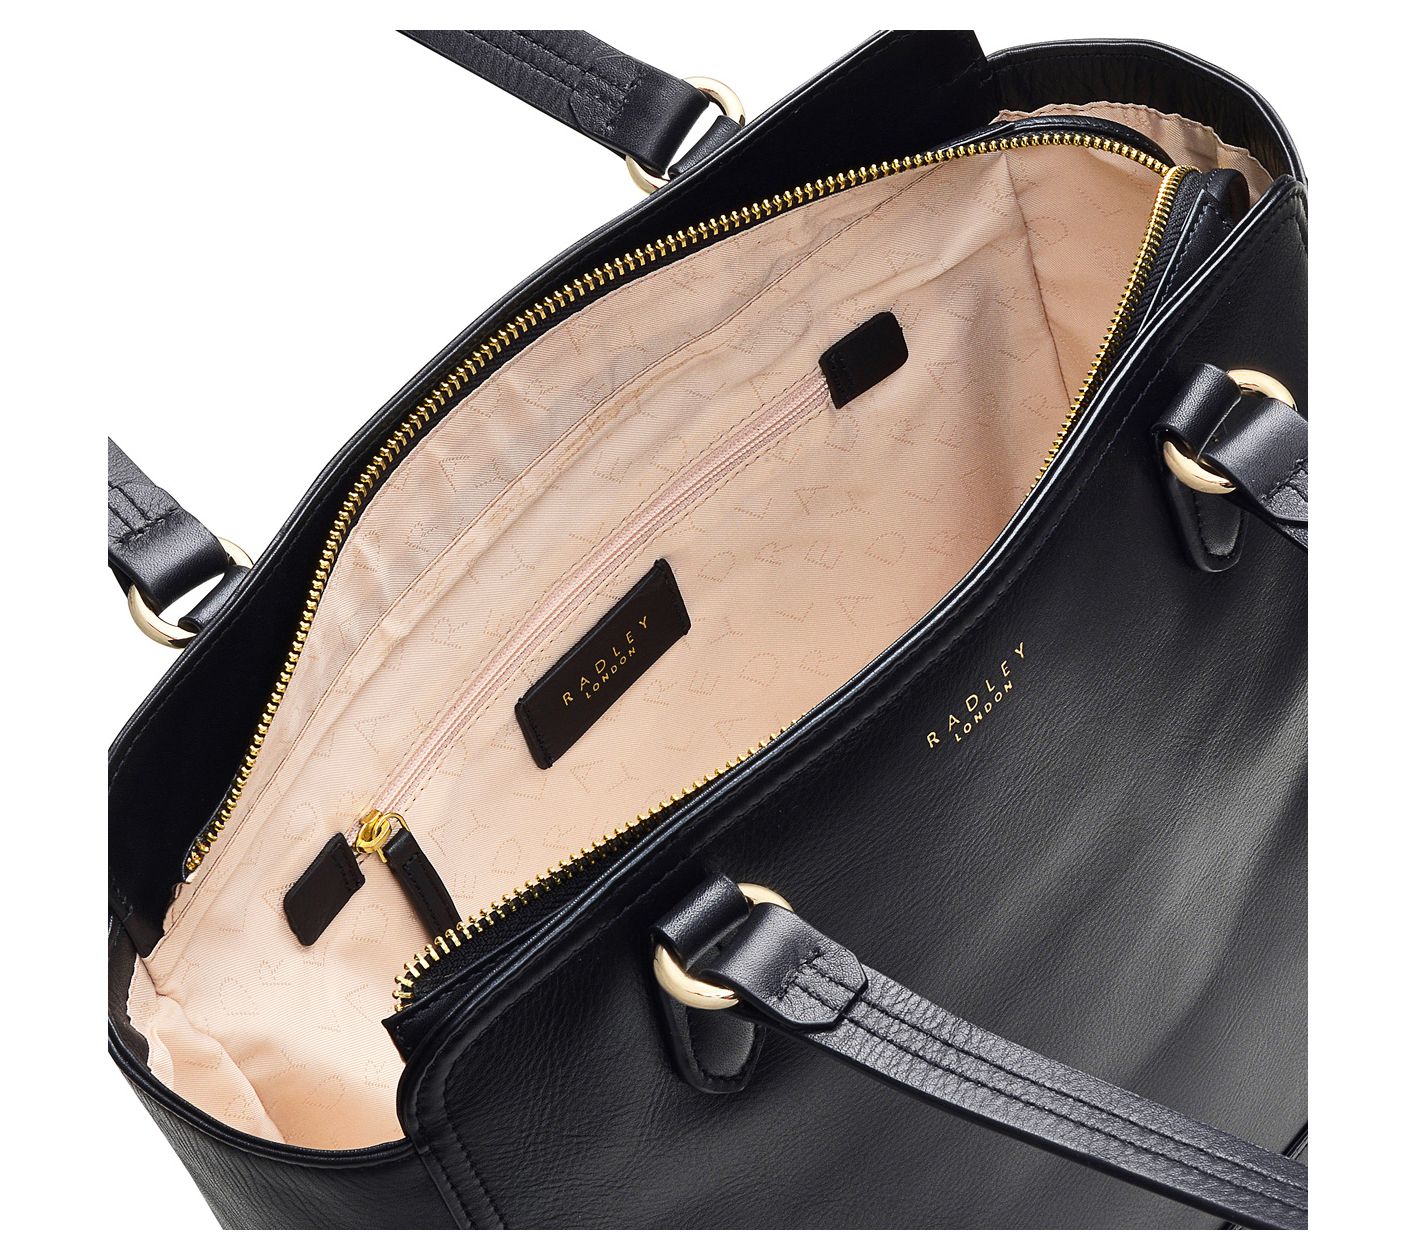 Radley London Black Leather Satchel Shoulder Bag Radley Purse 